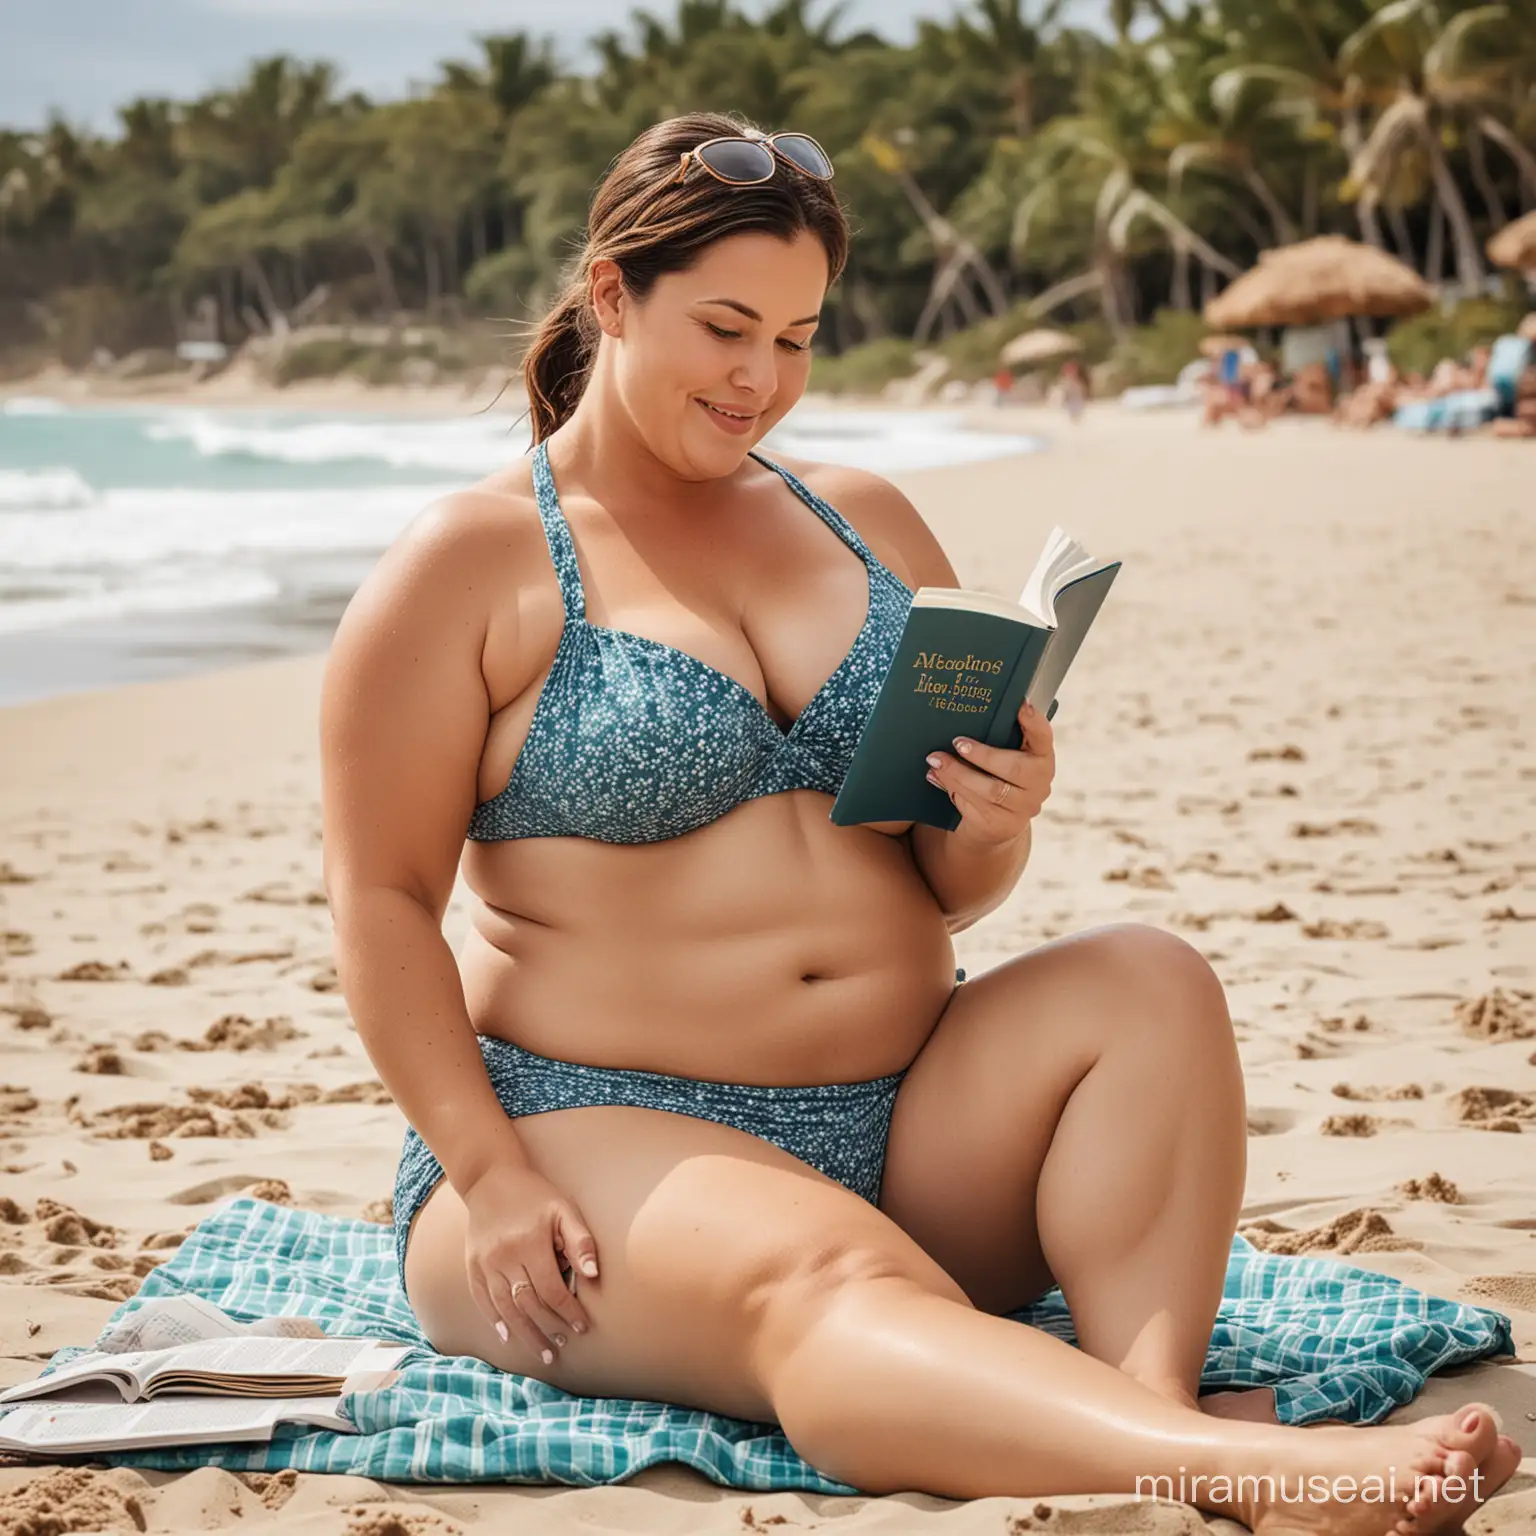 erstelle ein Bild einer molligen 35jährigen Frau im bikini am Strand ein Buch lesend 